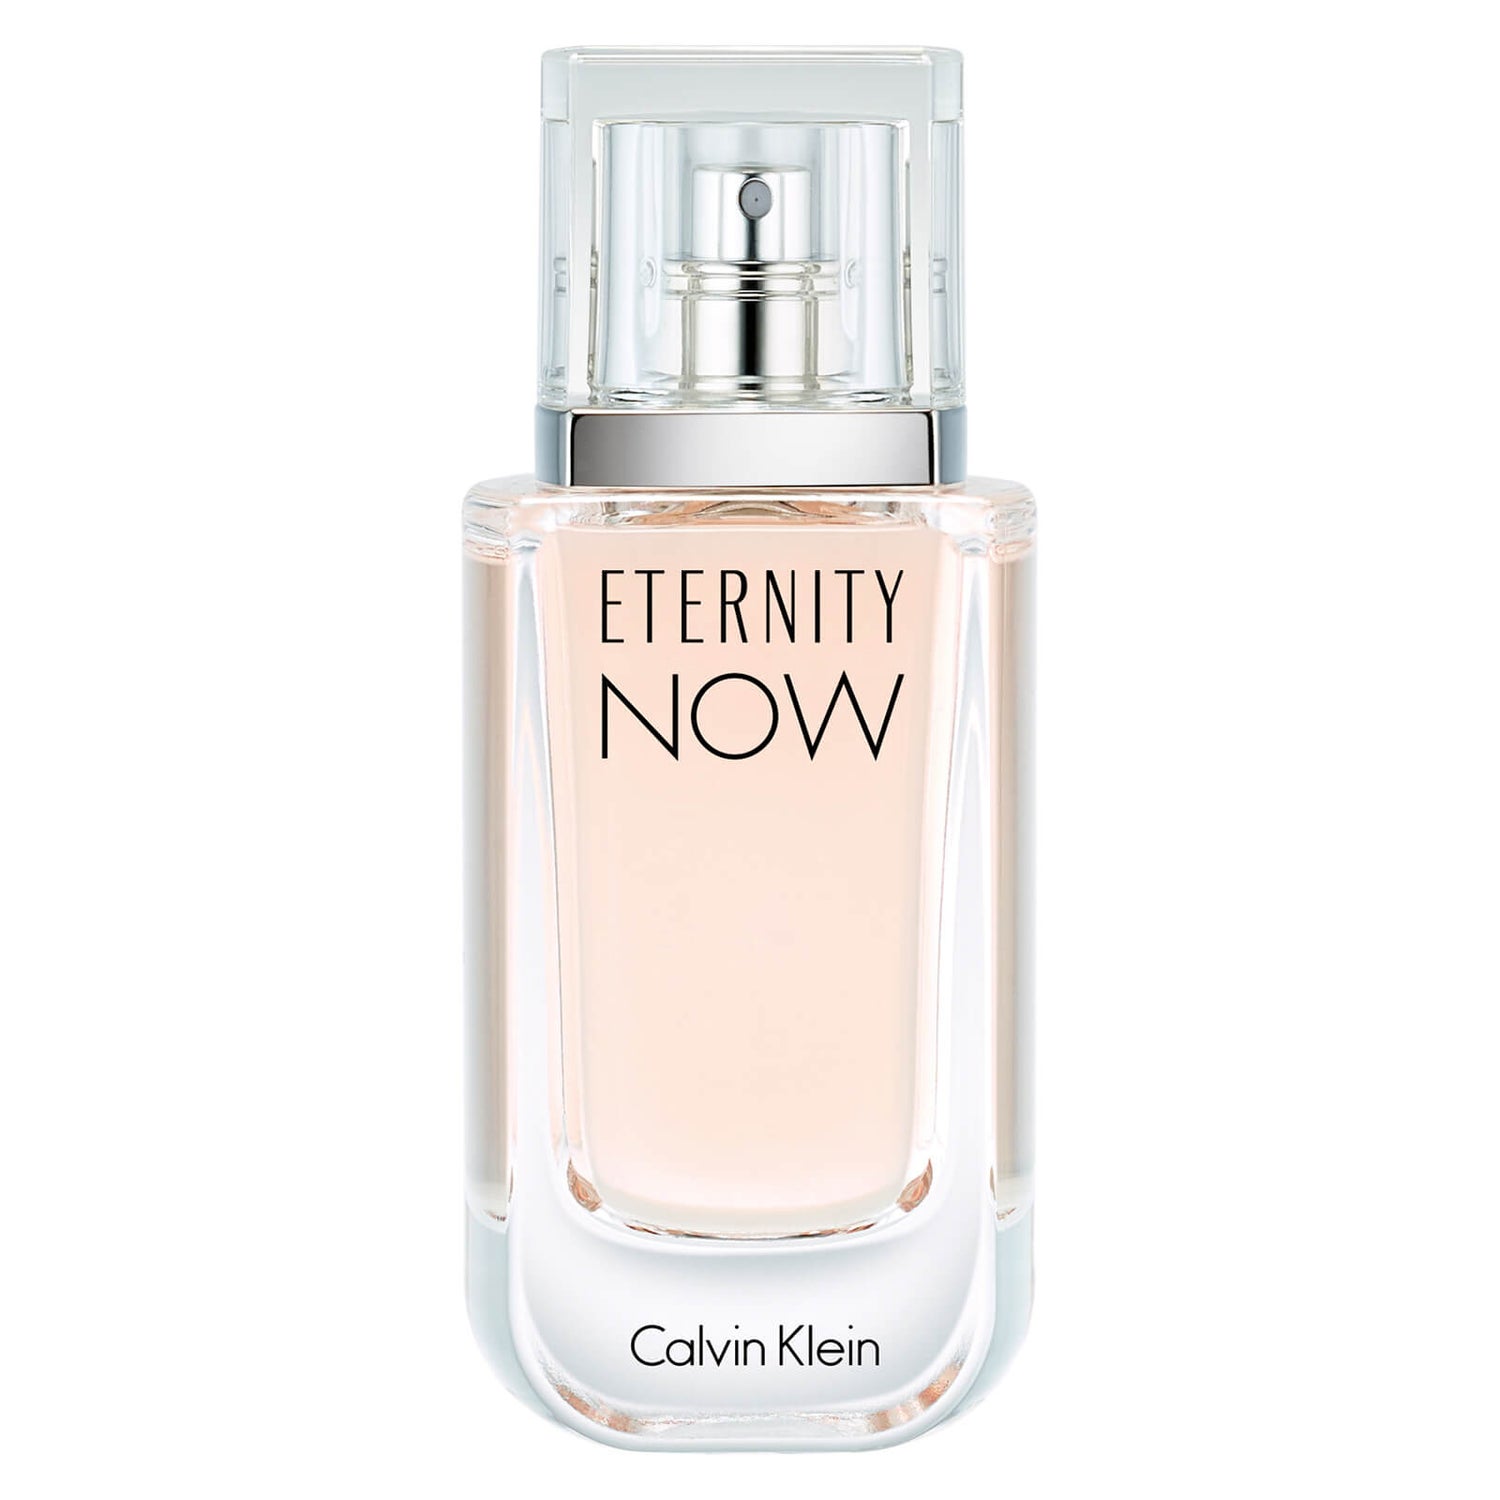 إعادة توجيه يعصر الظربان نوبة غضب سلاح الفرسان يغمر  Calvin Klein Eternity Now for Women Eau de Parfum (30ml